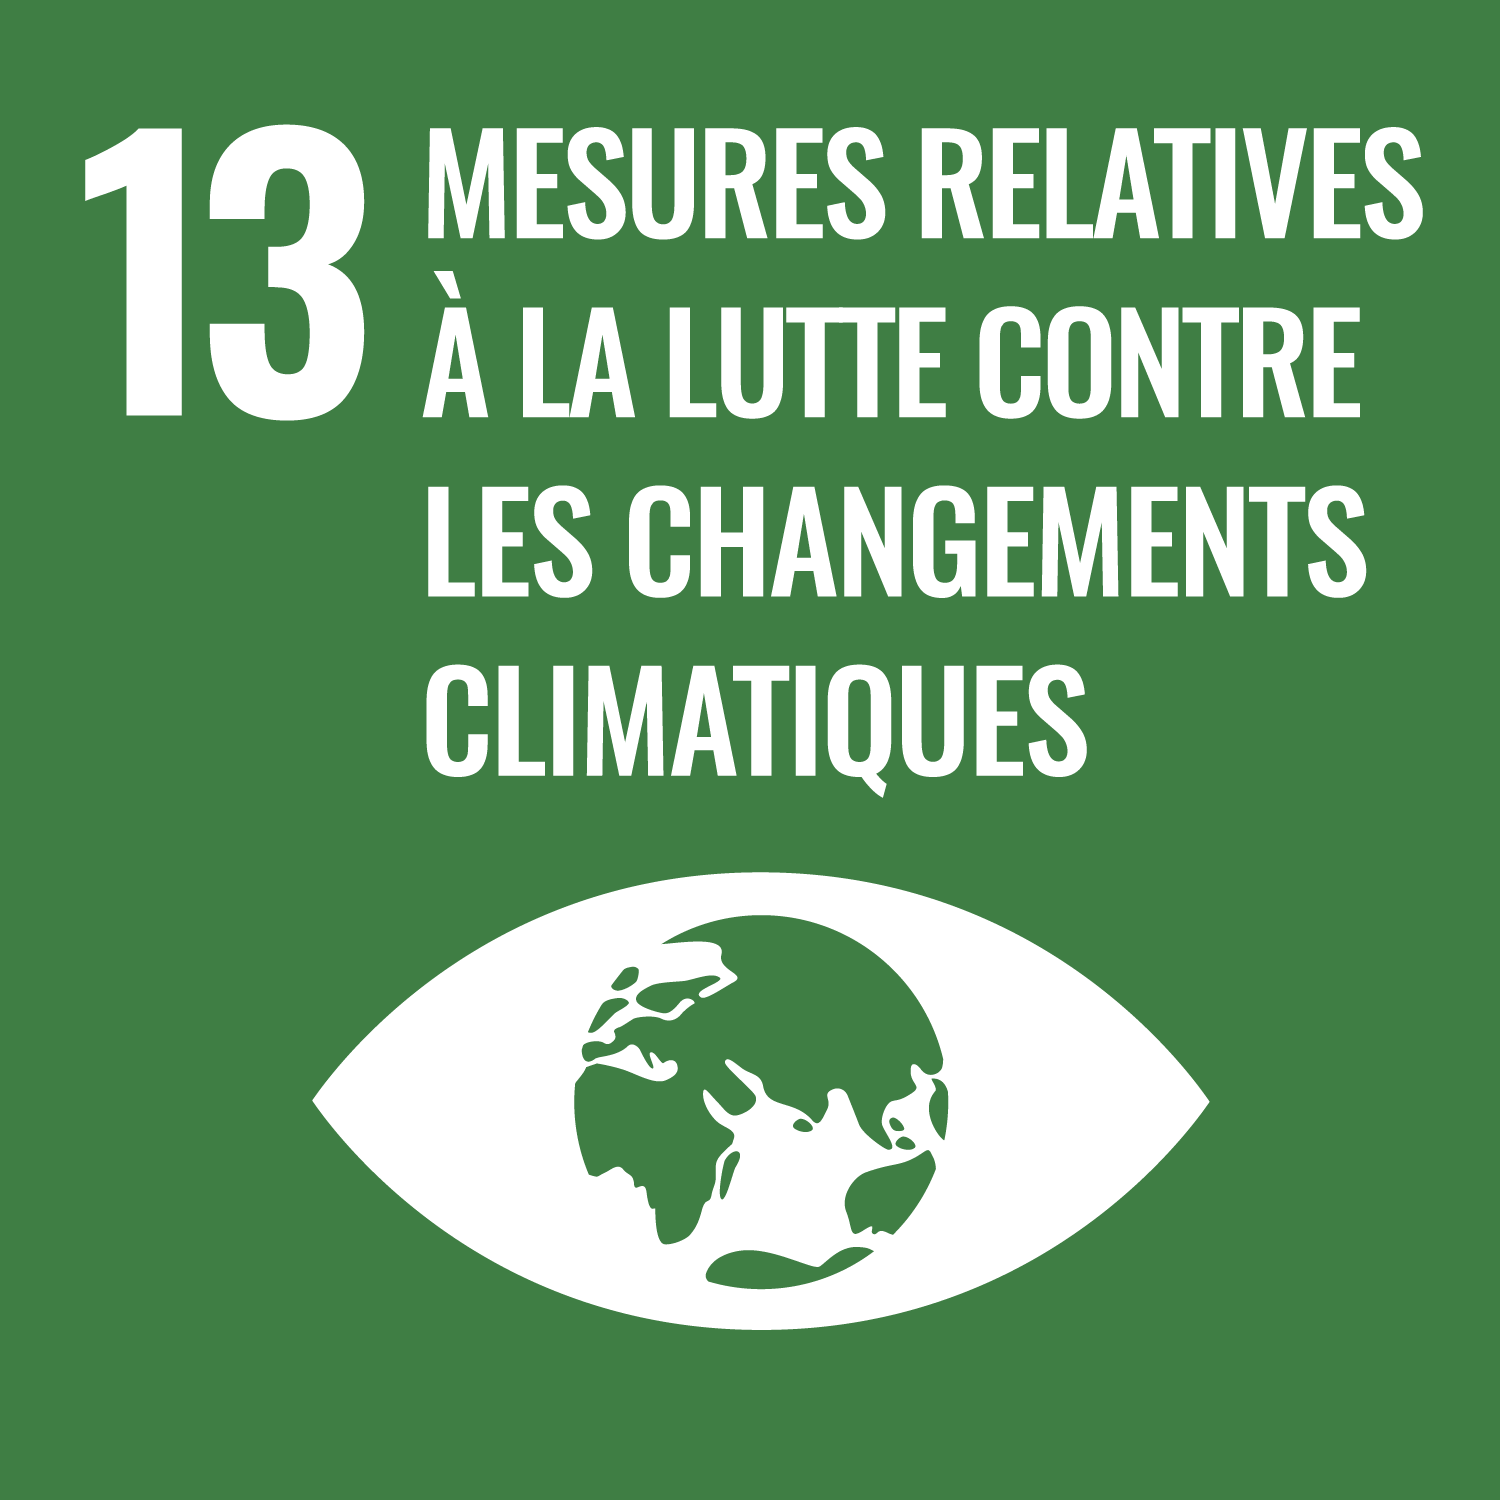 SDG 13. Mesures relatives à la lutte contre les changements climatiques